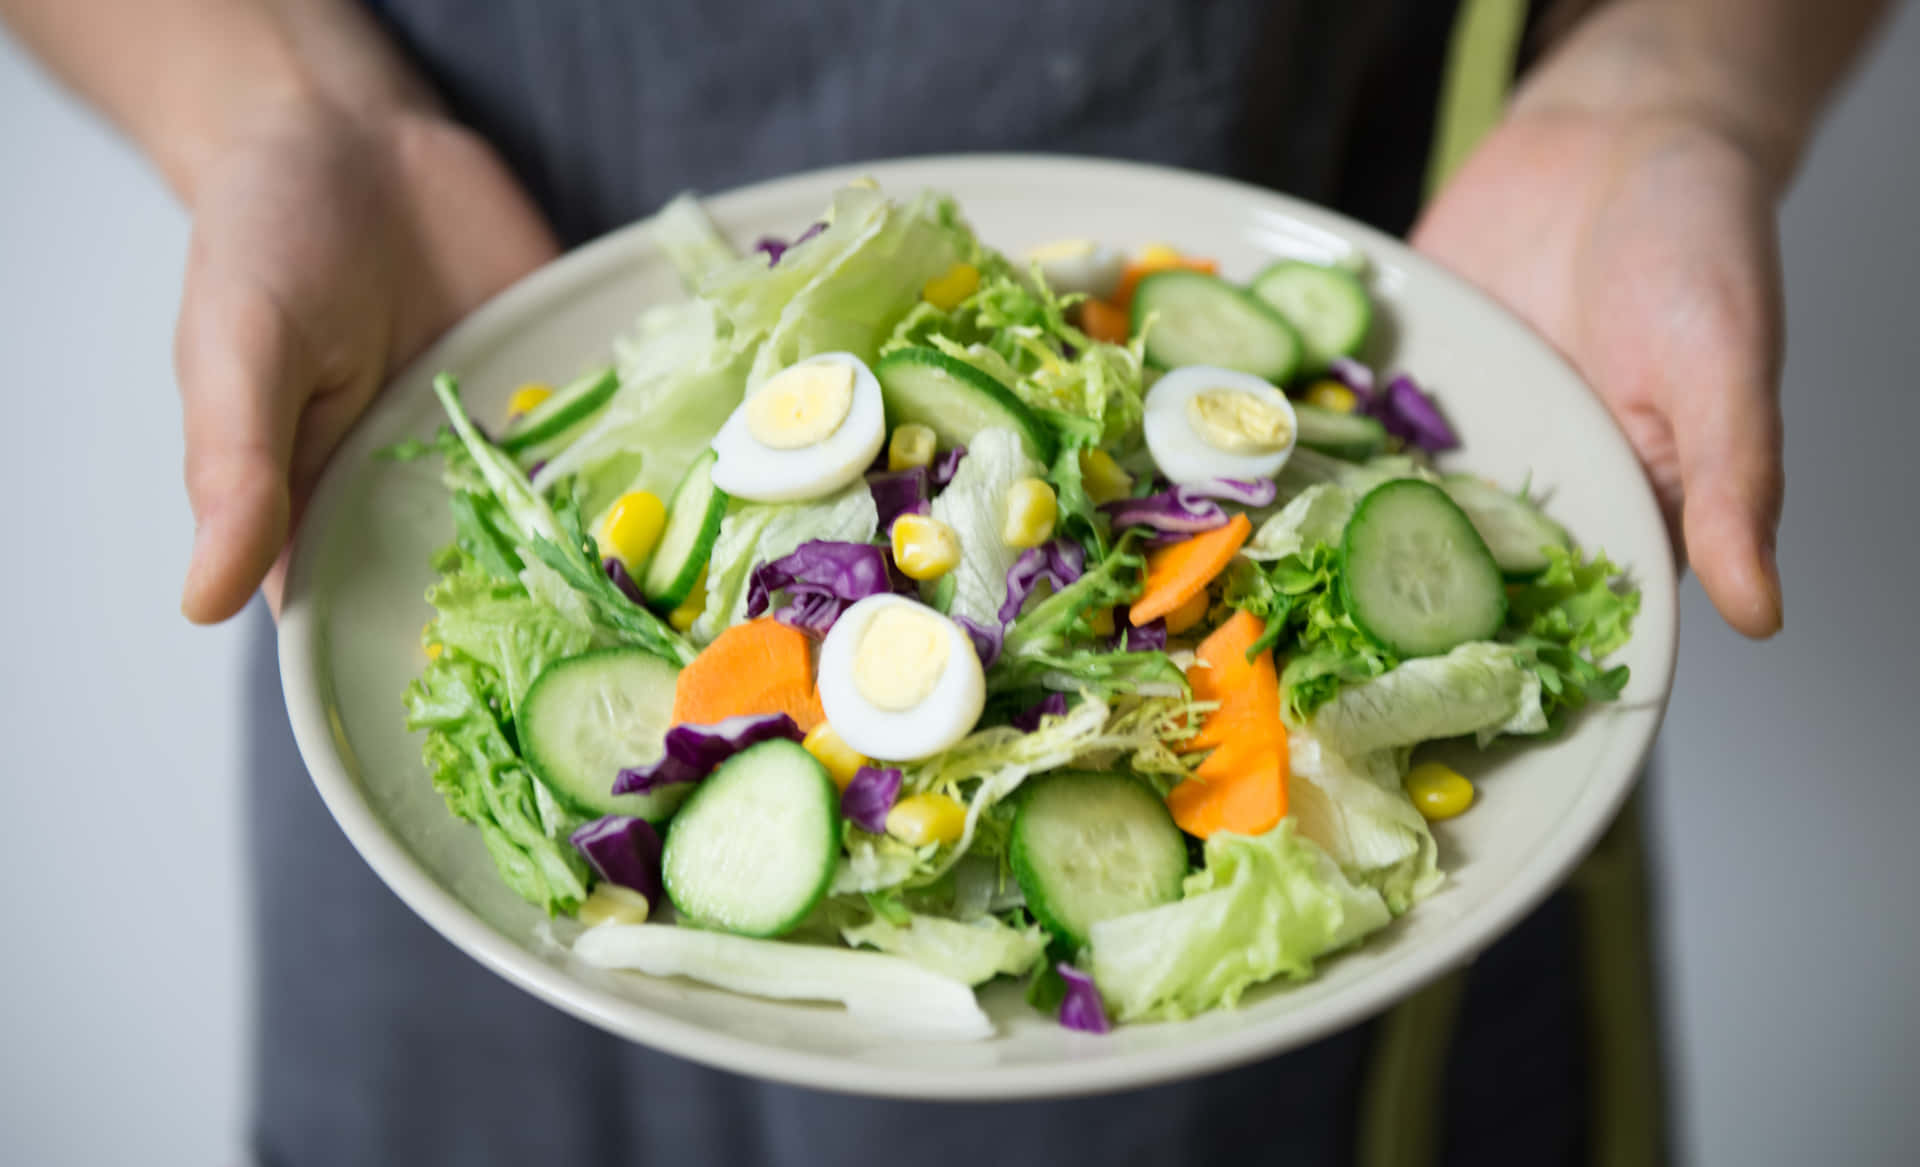 Enjoy a healthy, delicious salad today!